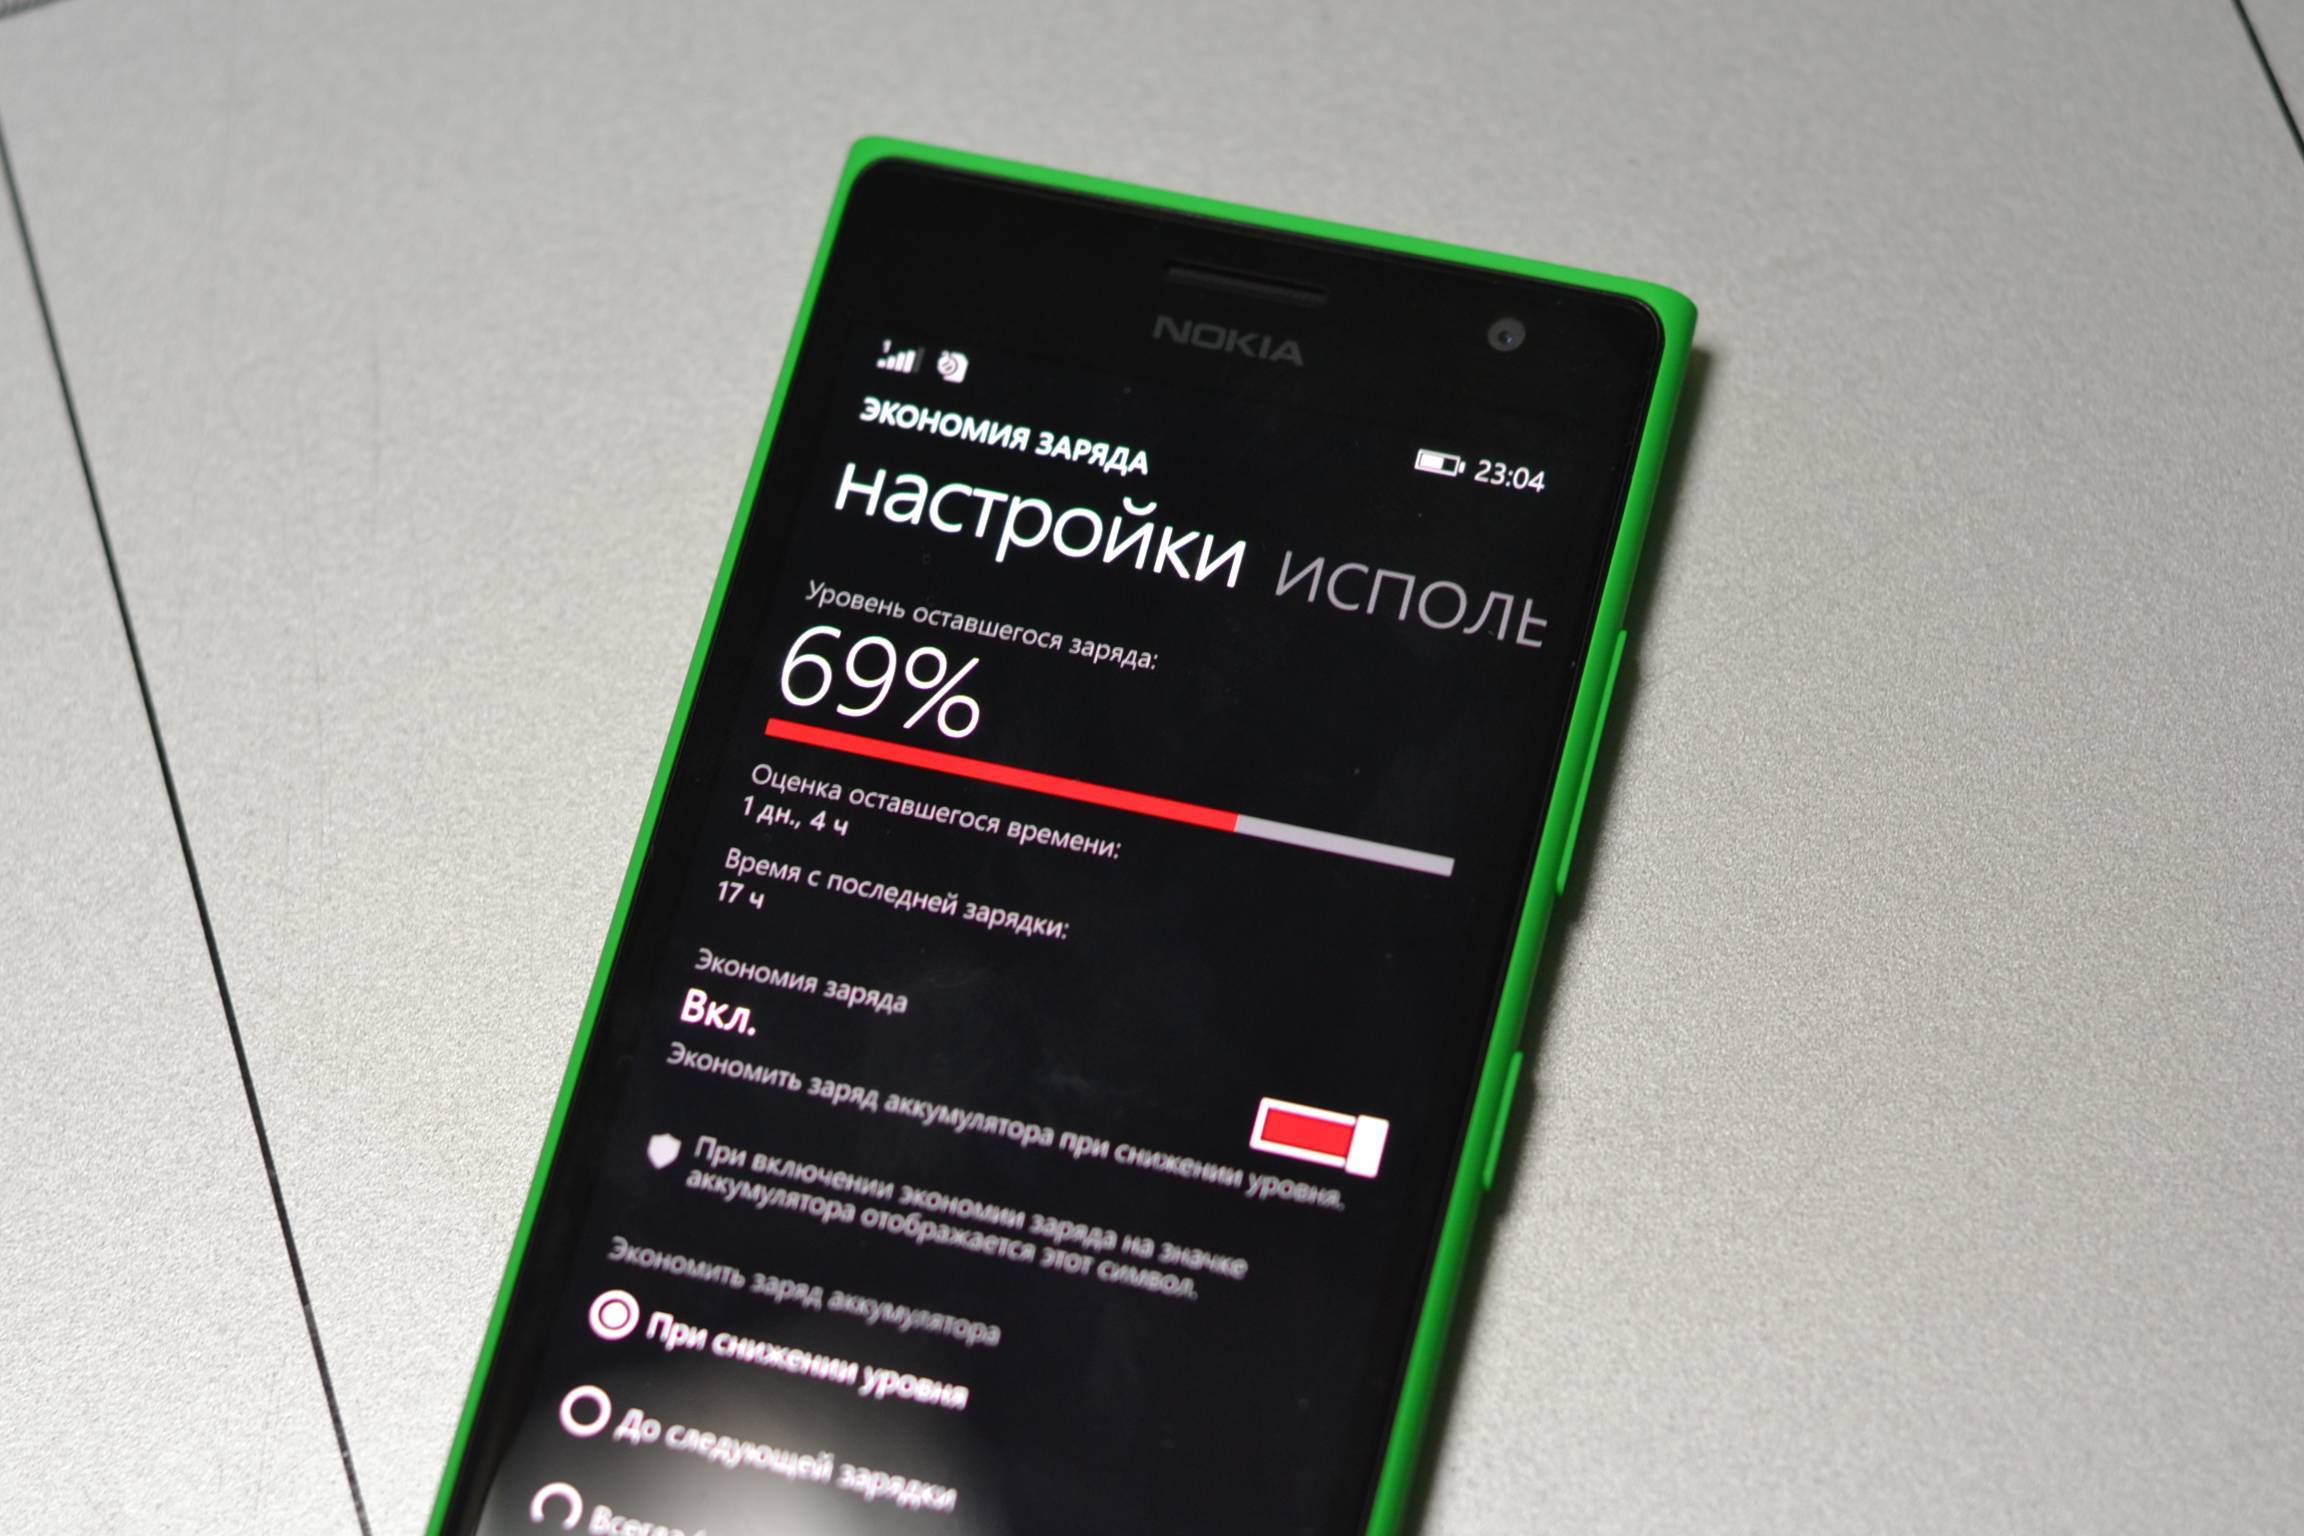 Nokia lumia 730 vs nokia lumia 735